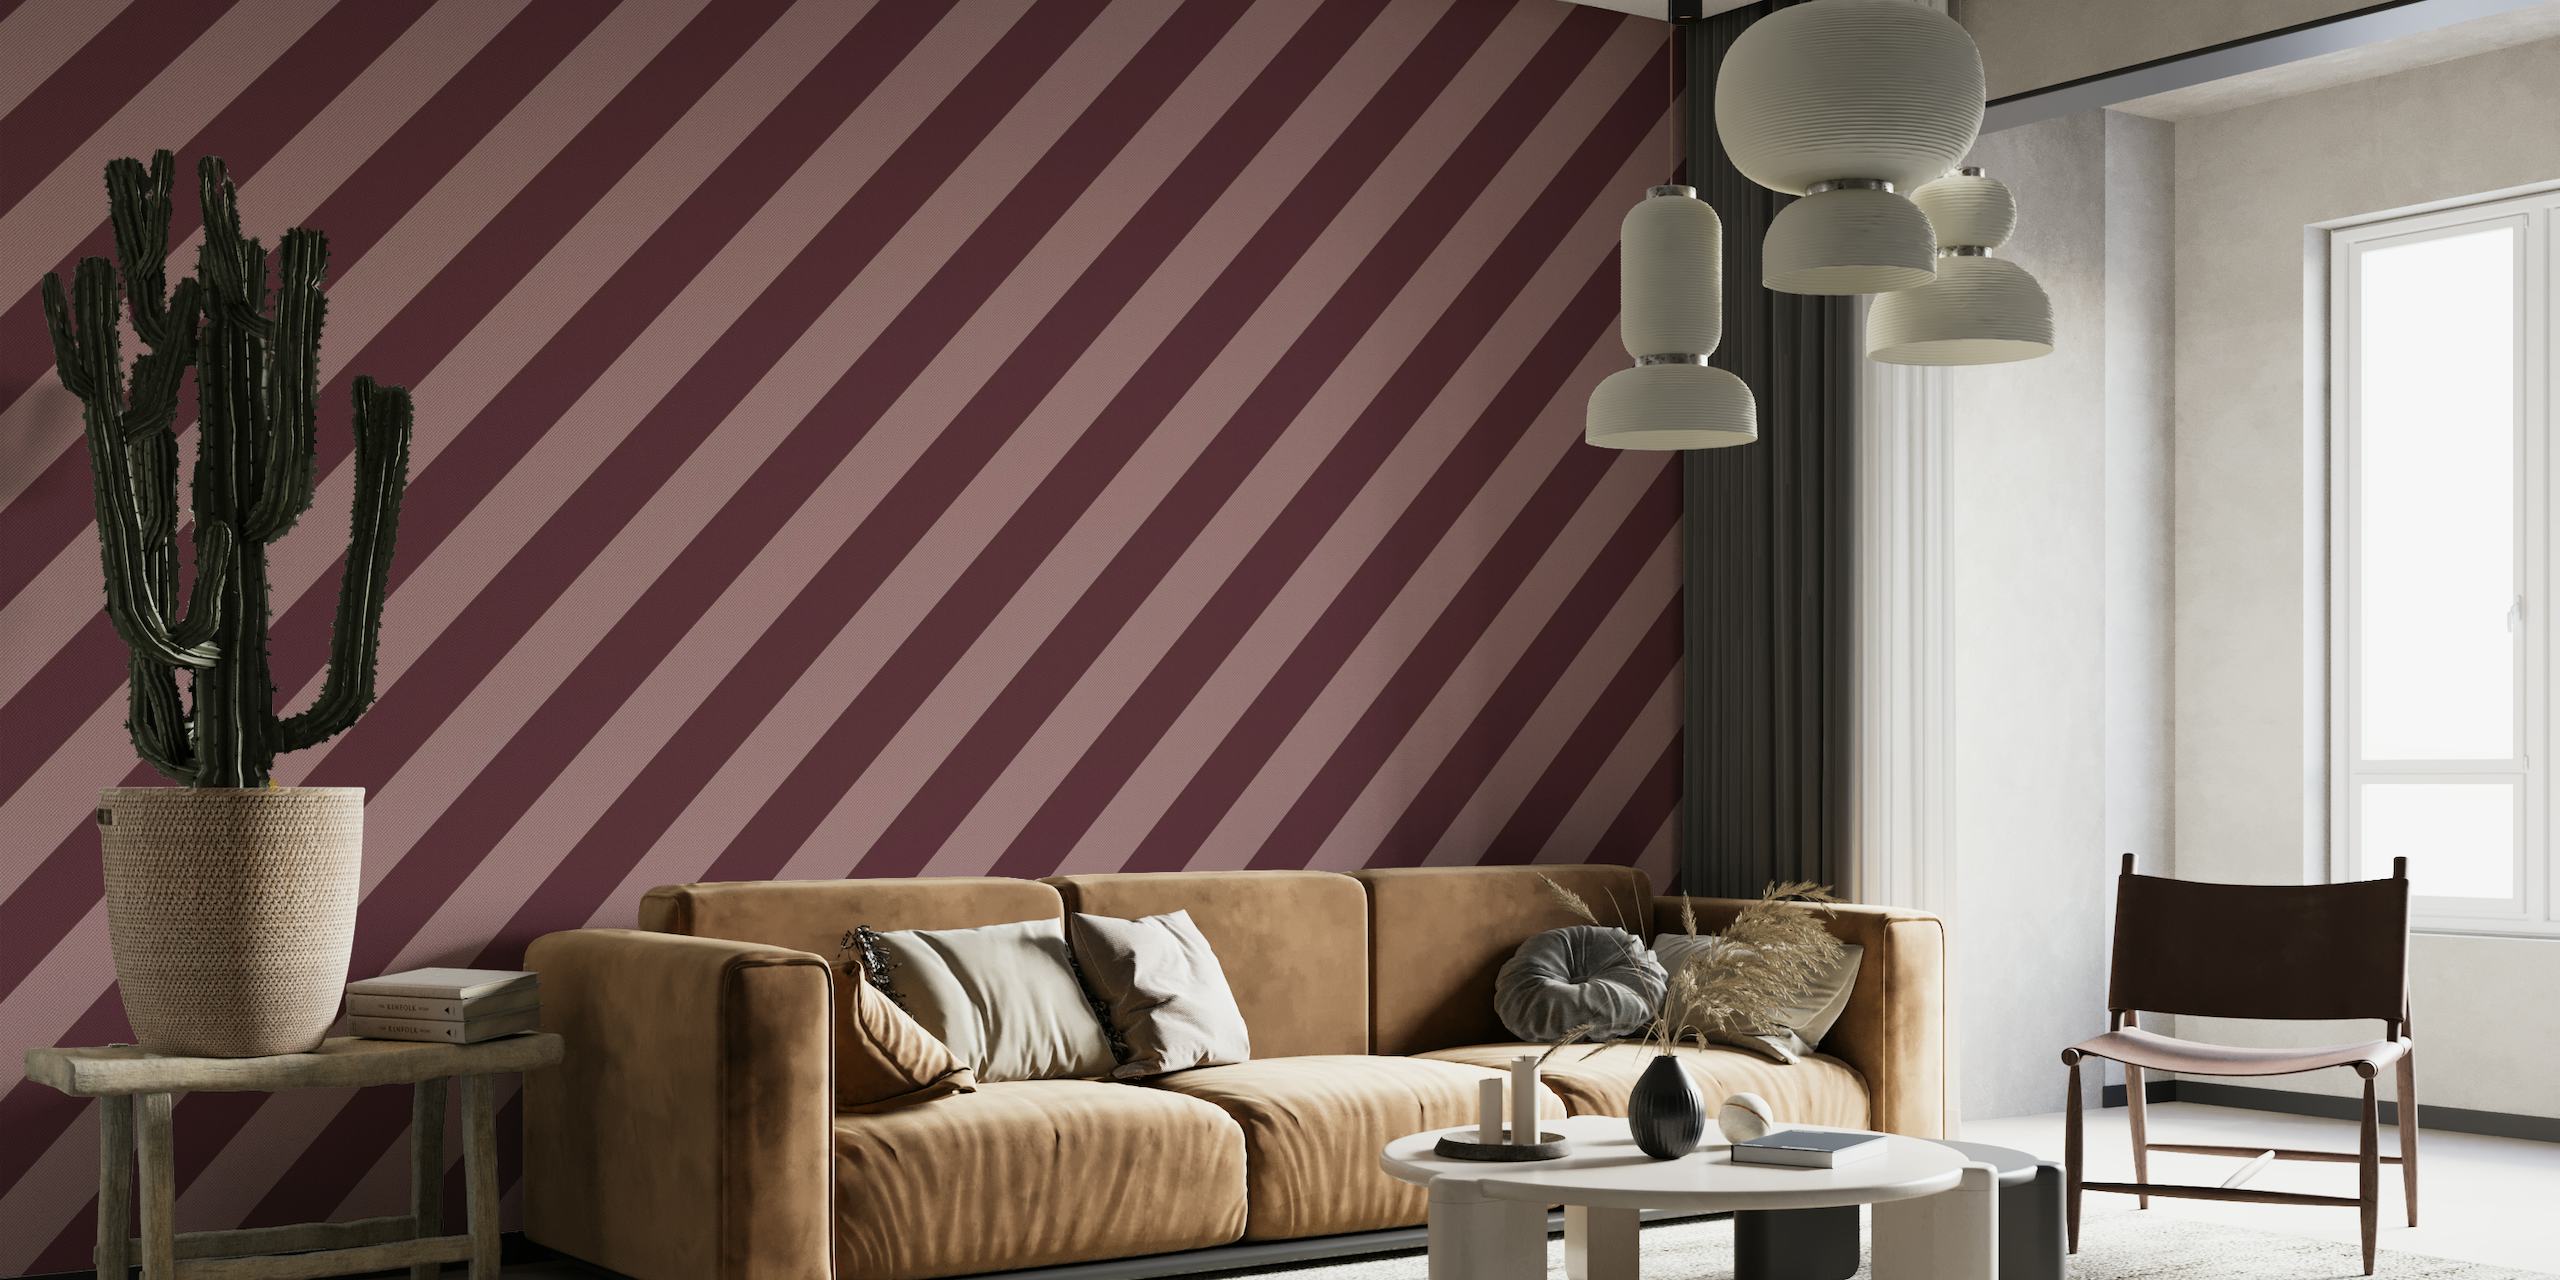 Getextureerd diagonaal streeppatroon in bordeaux- en palissanderkleuren voor een fotobehang